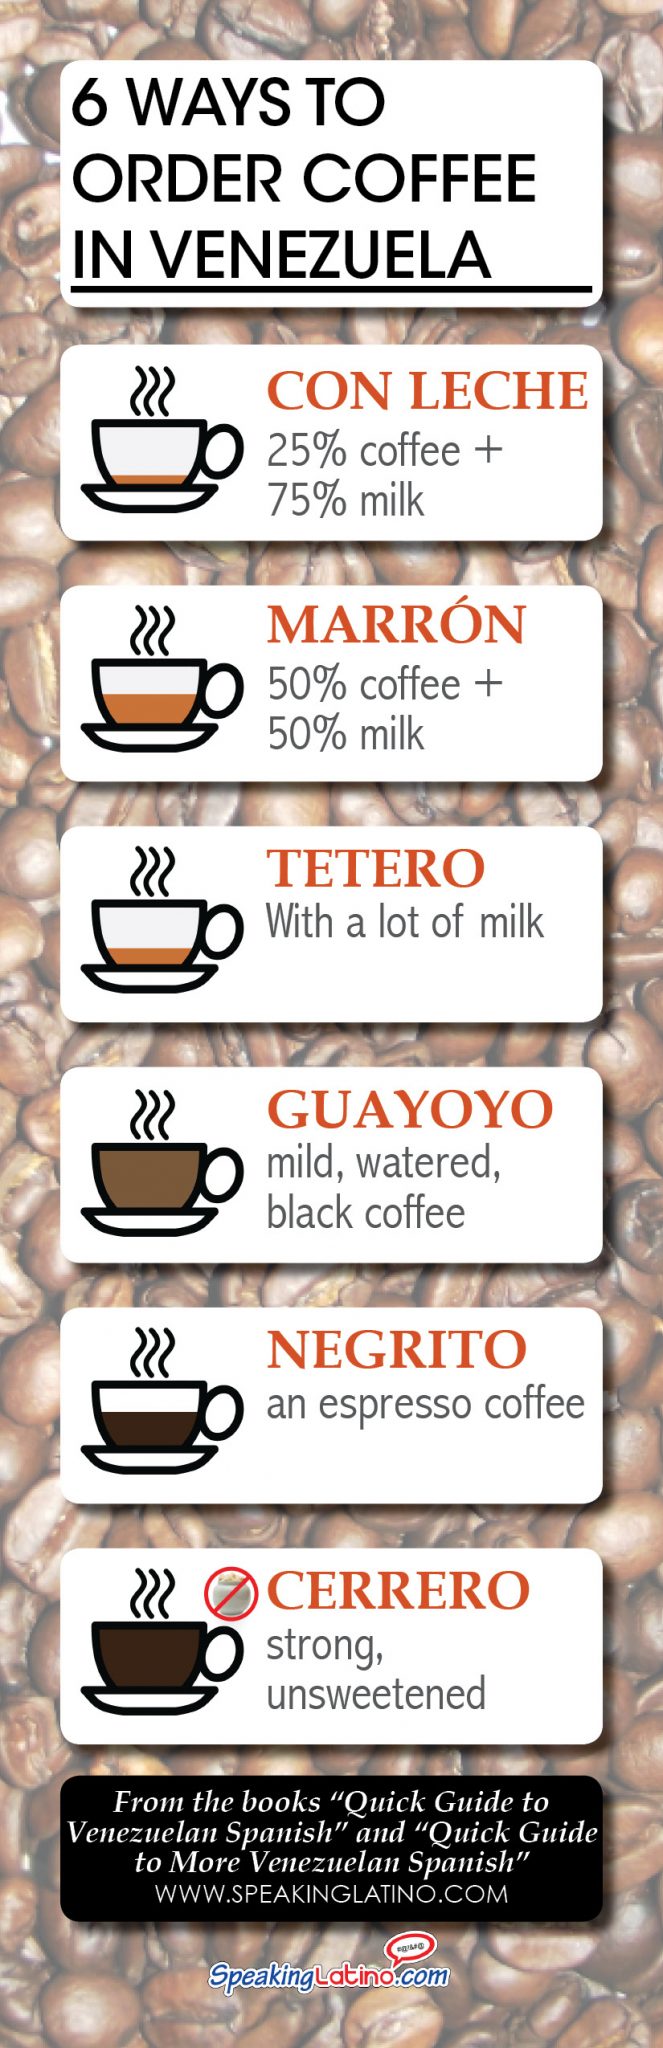 Infographic: 6 Venezuela Spanish Words to Order Coffee